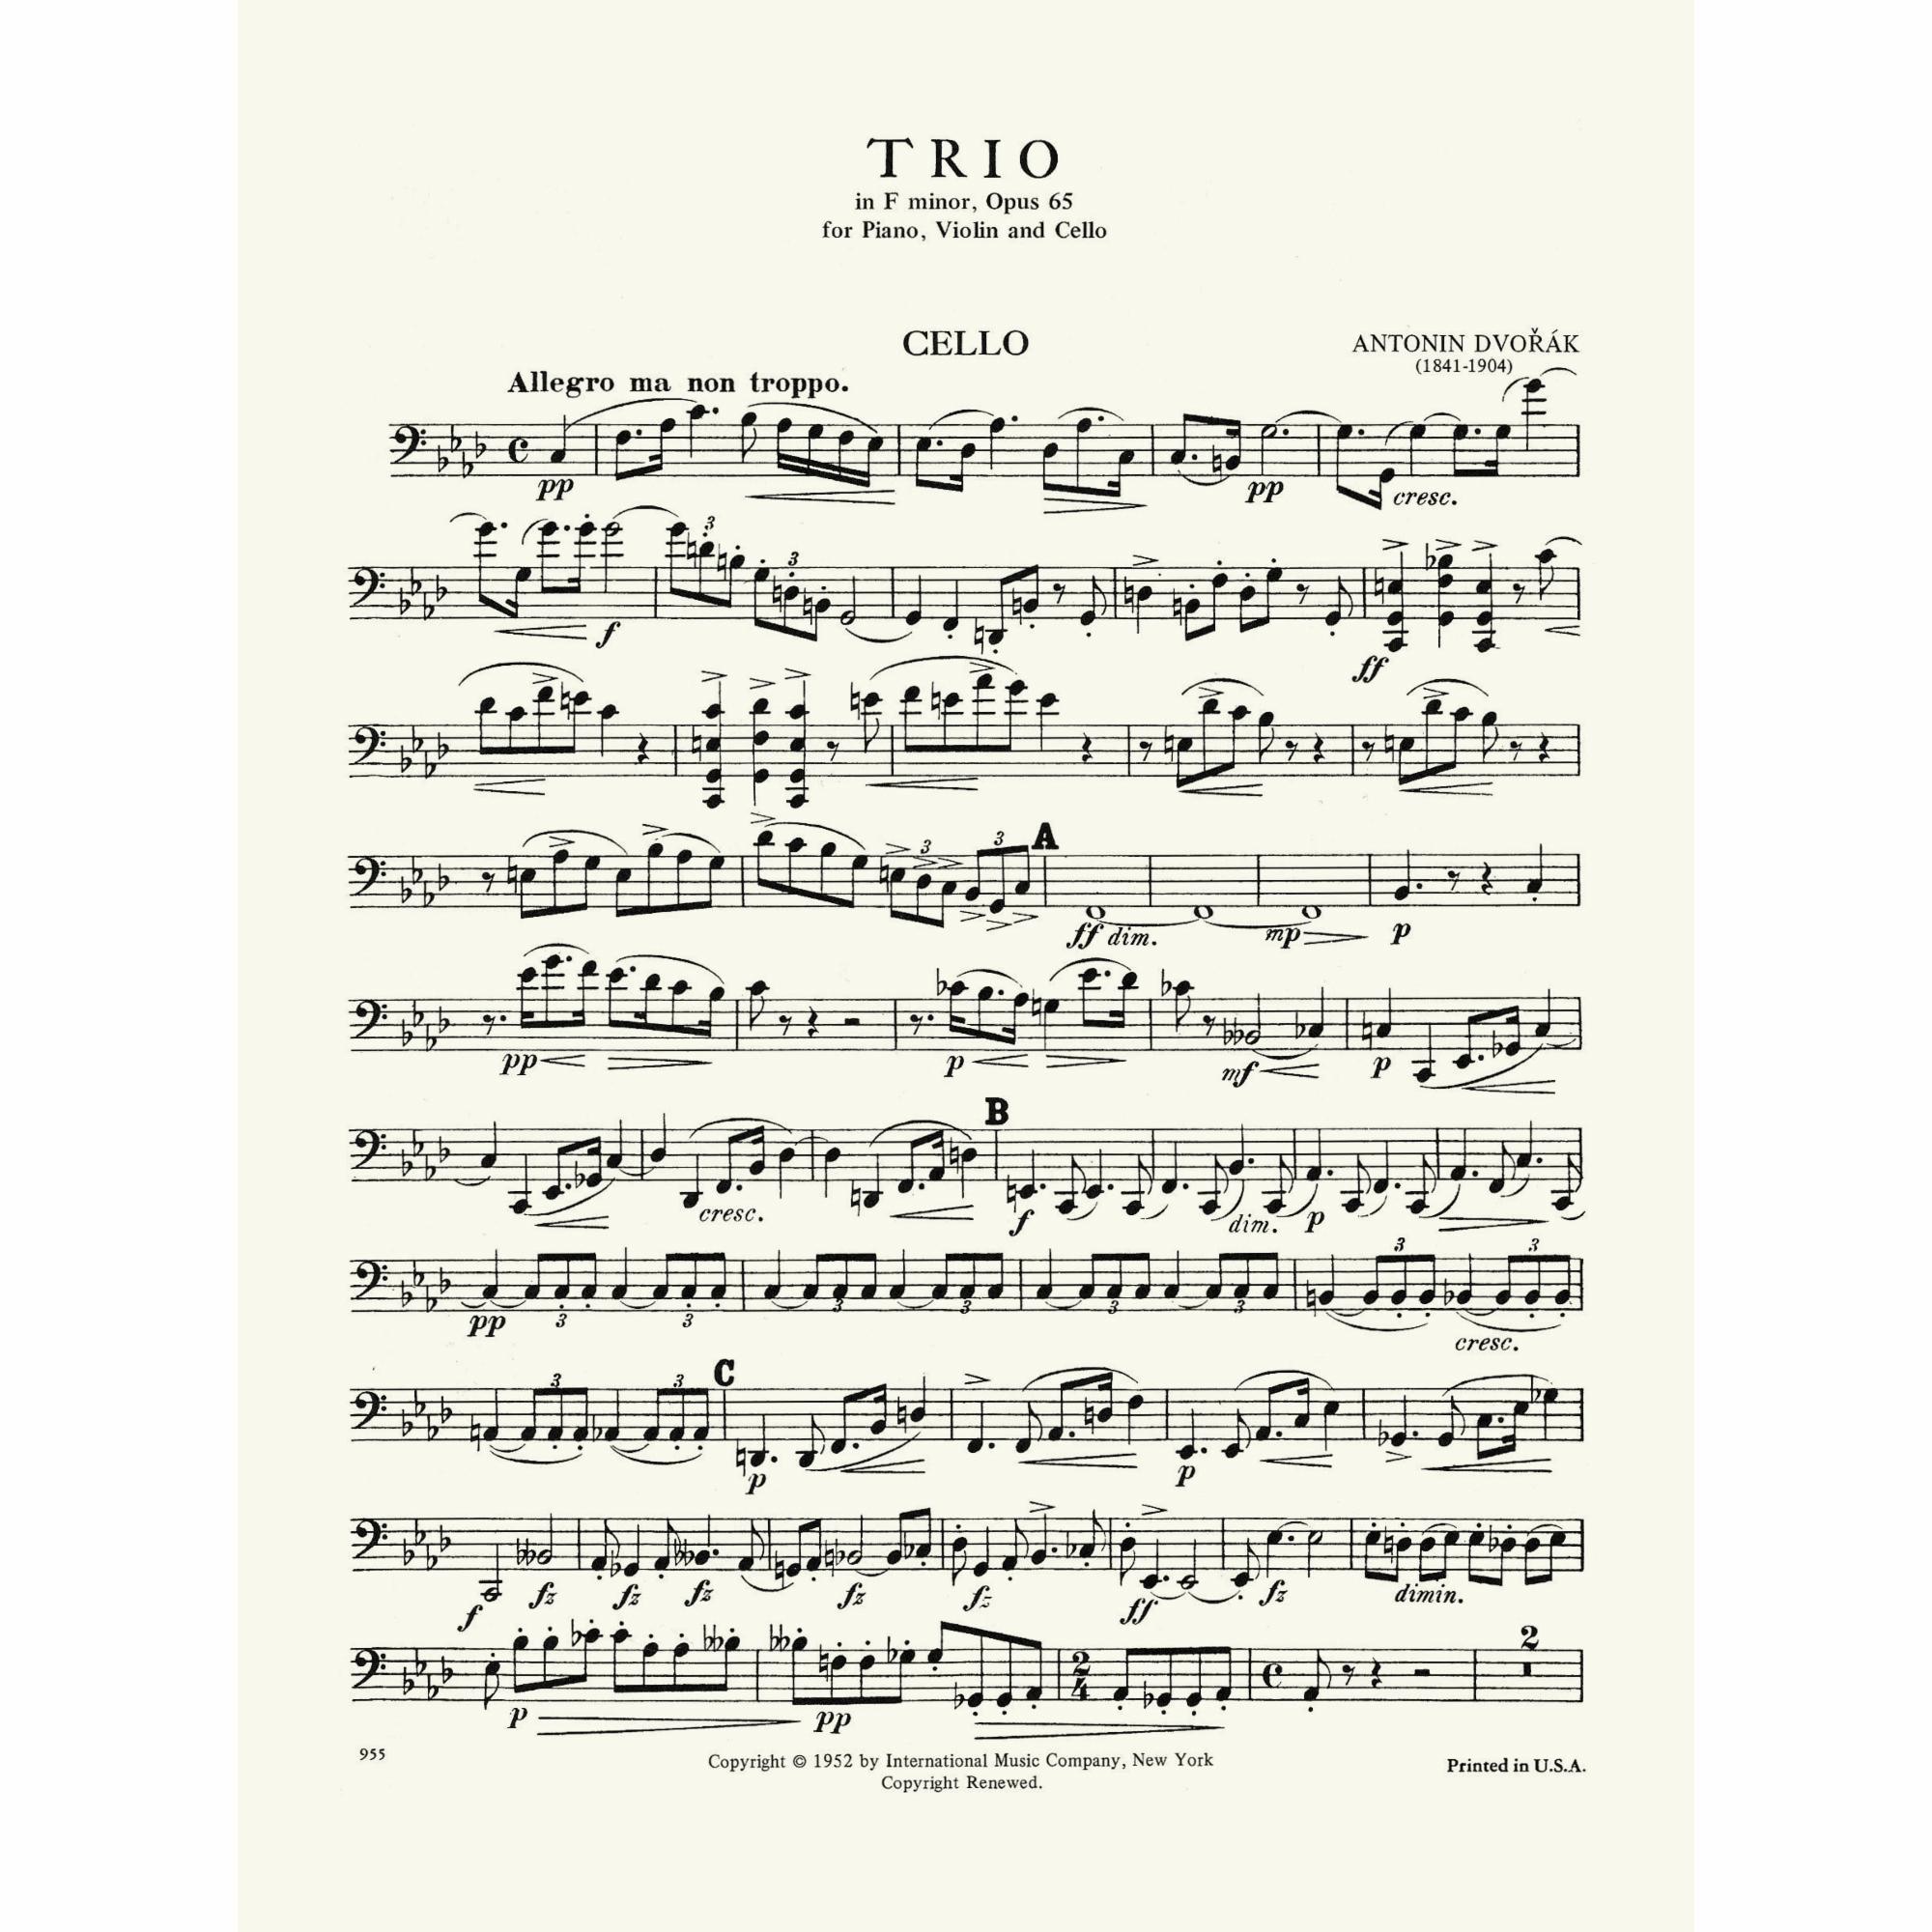 Sample: Cello (Pg. 1)